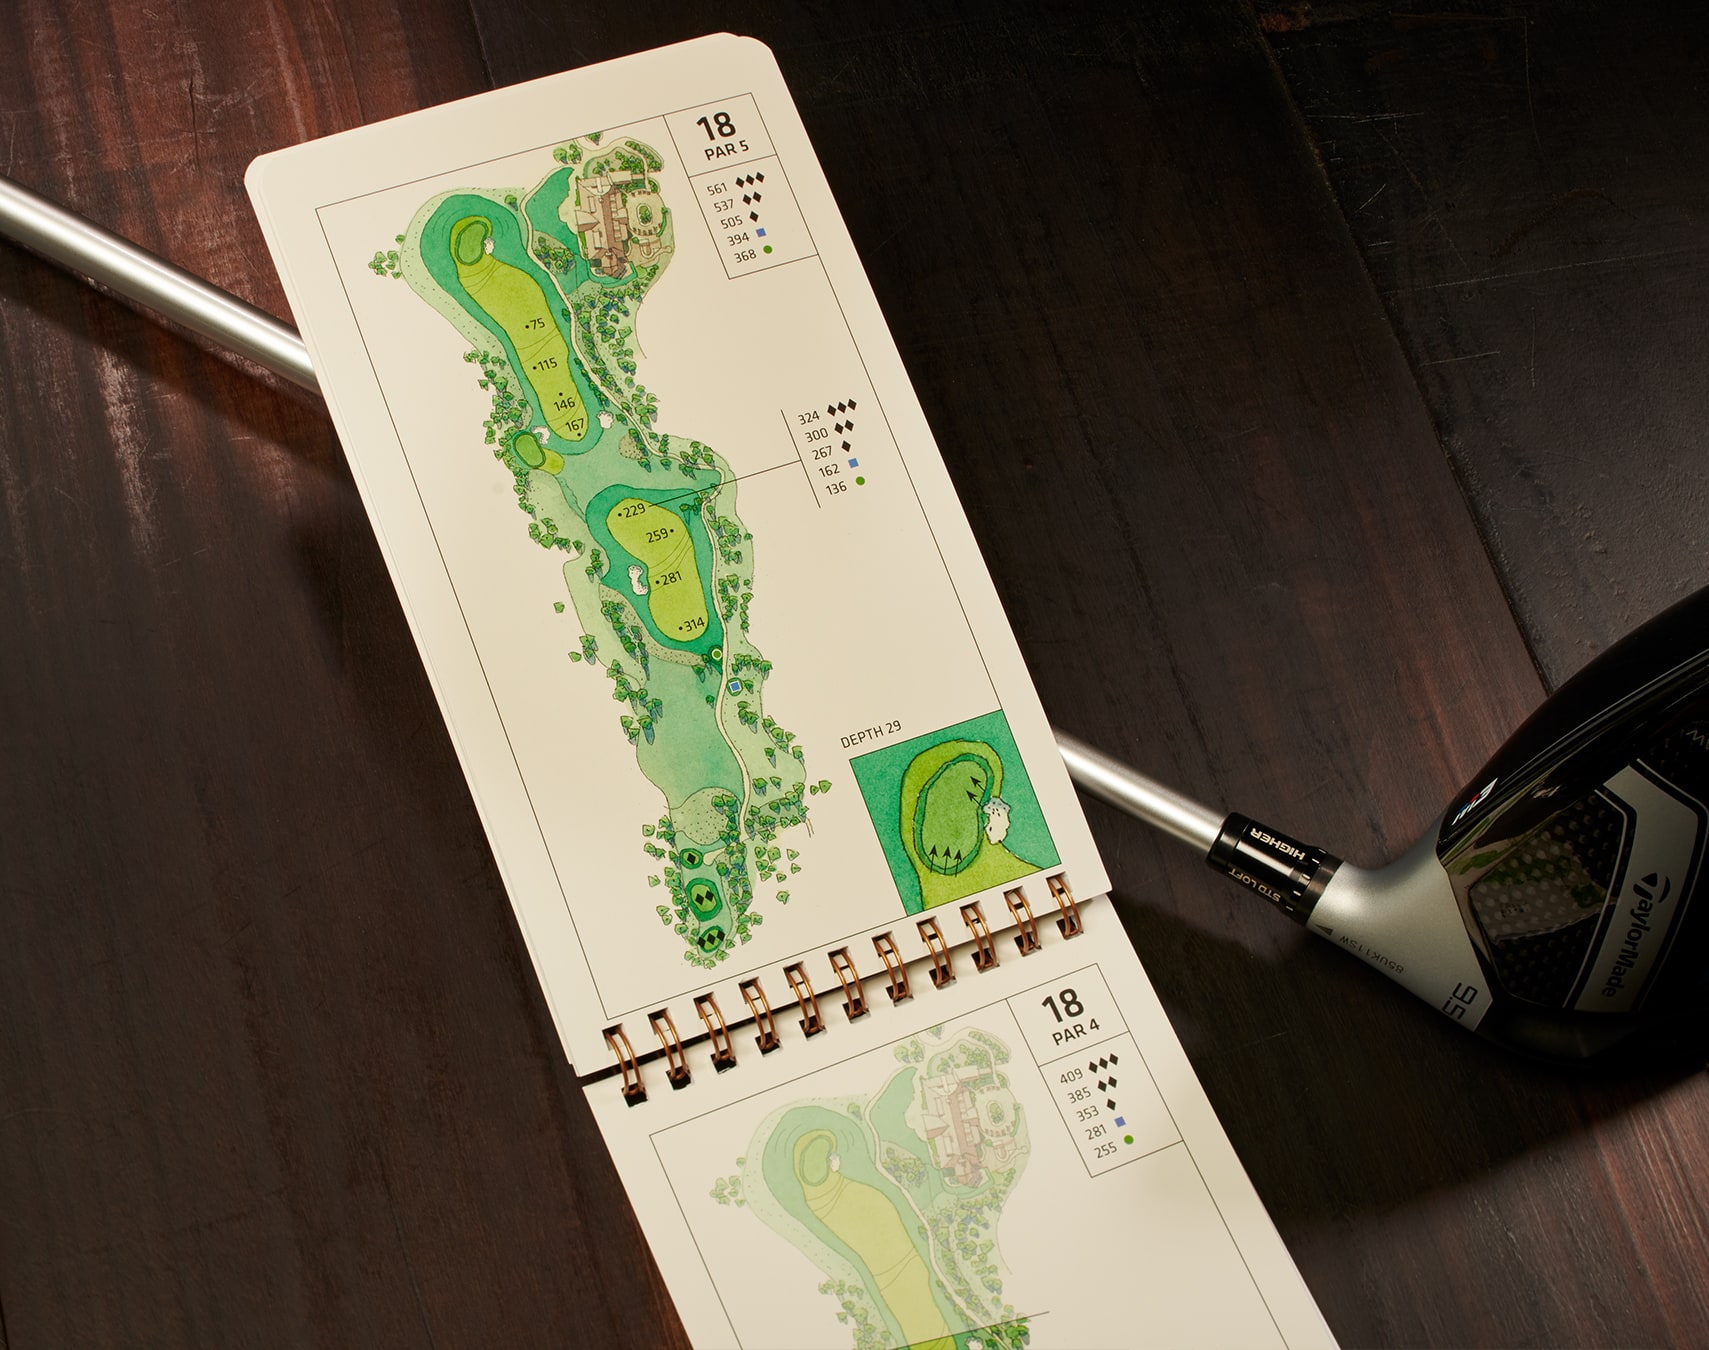 Spanish Peaks highlands golf map booklet design